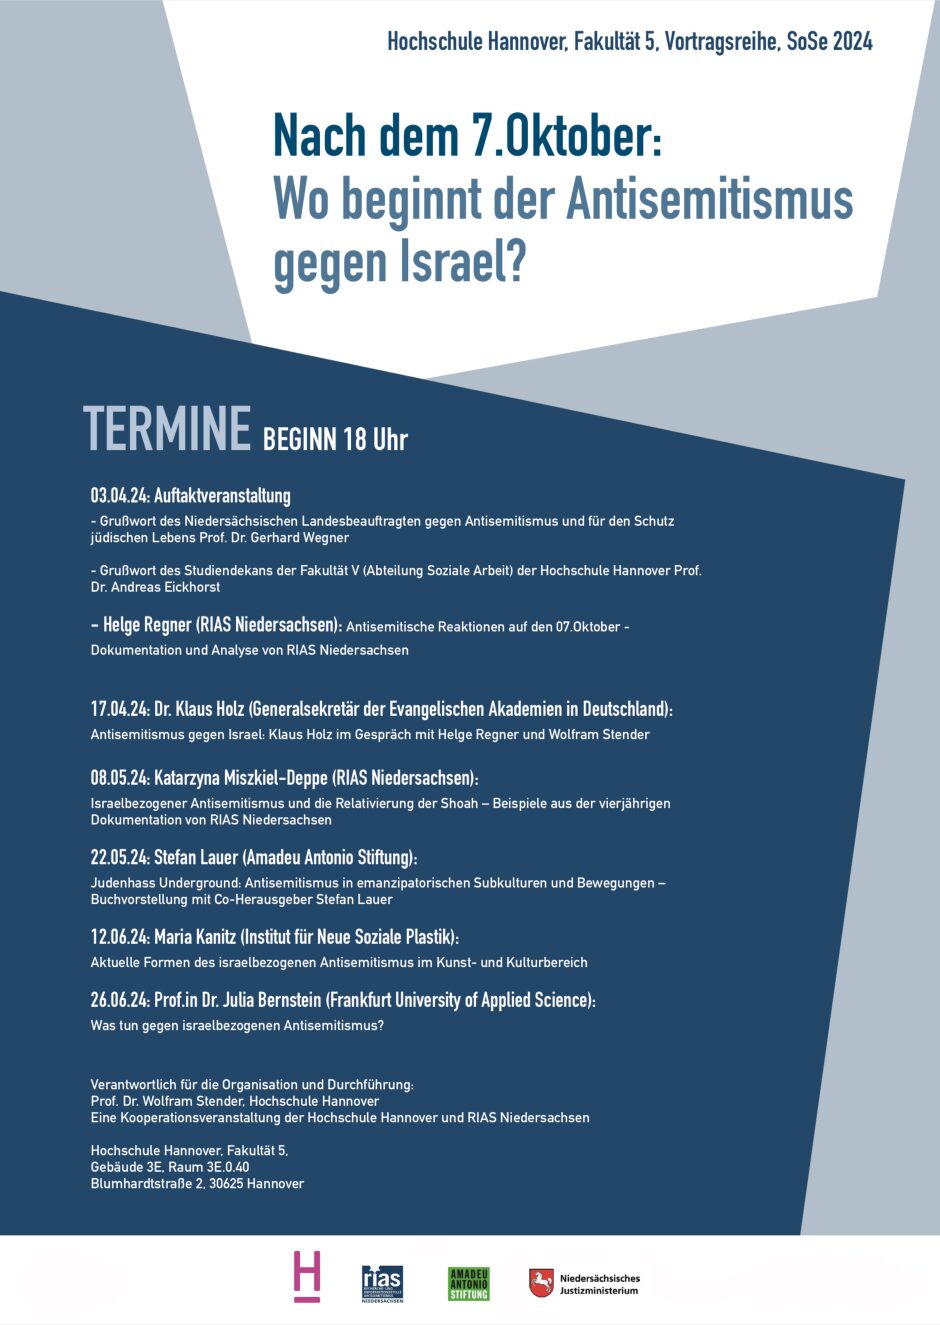 Judenhass Underground: Antisemitismus in emanzipatorischen Subkulturen und Bewegungen - Buchvorstellung mit Stefan Lauer)